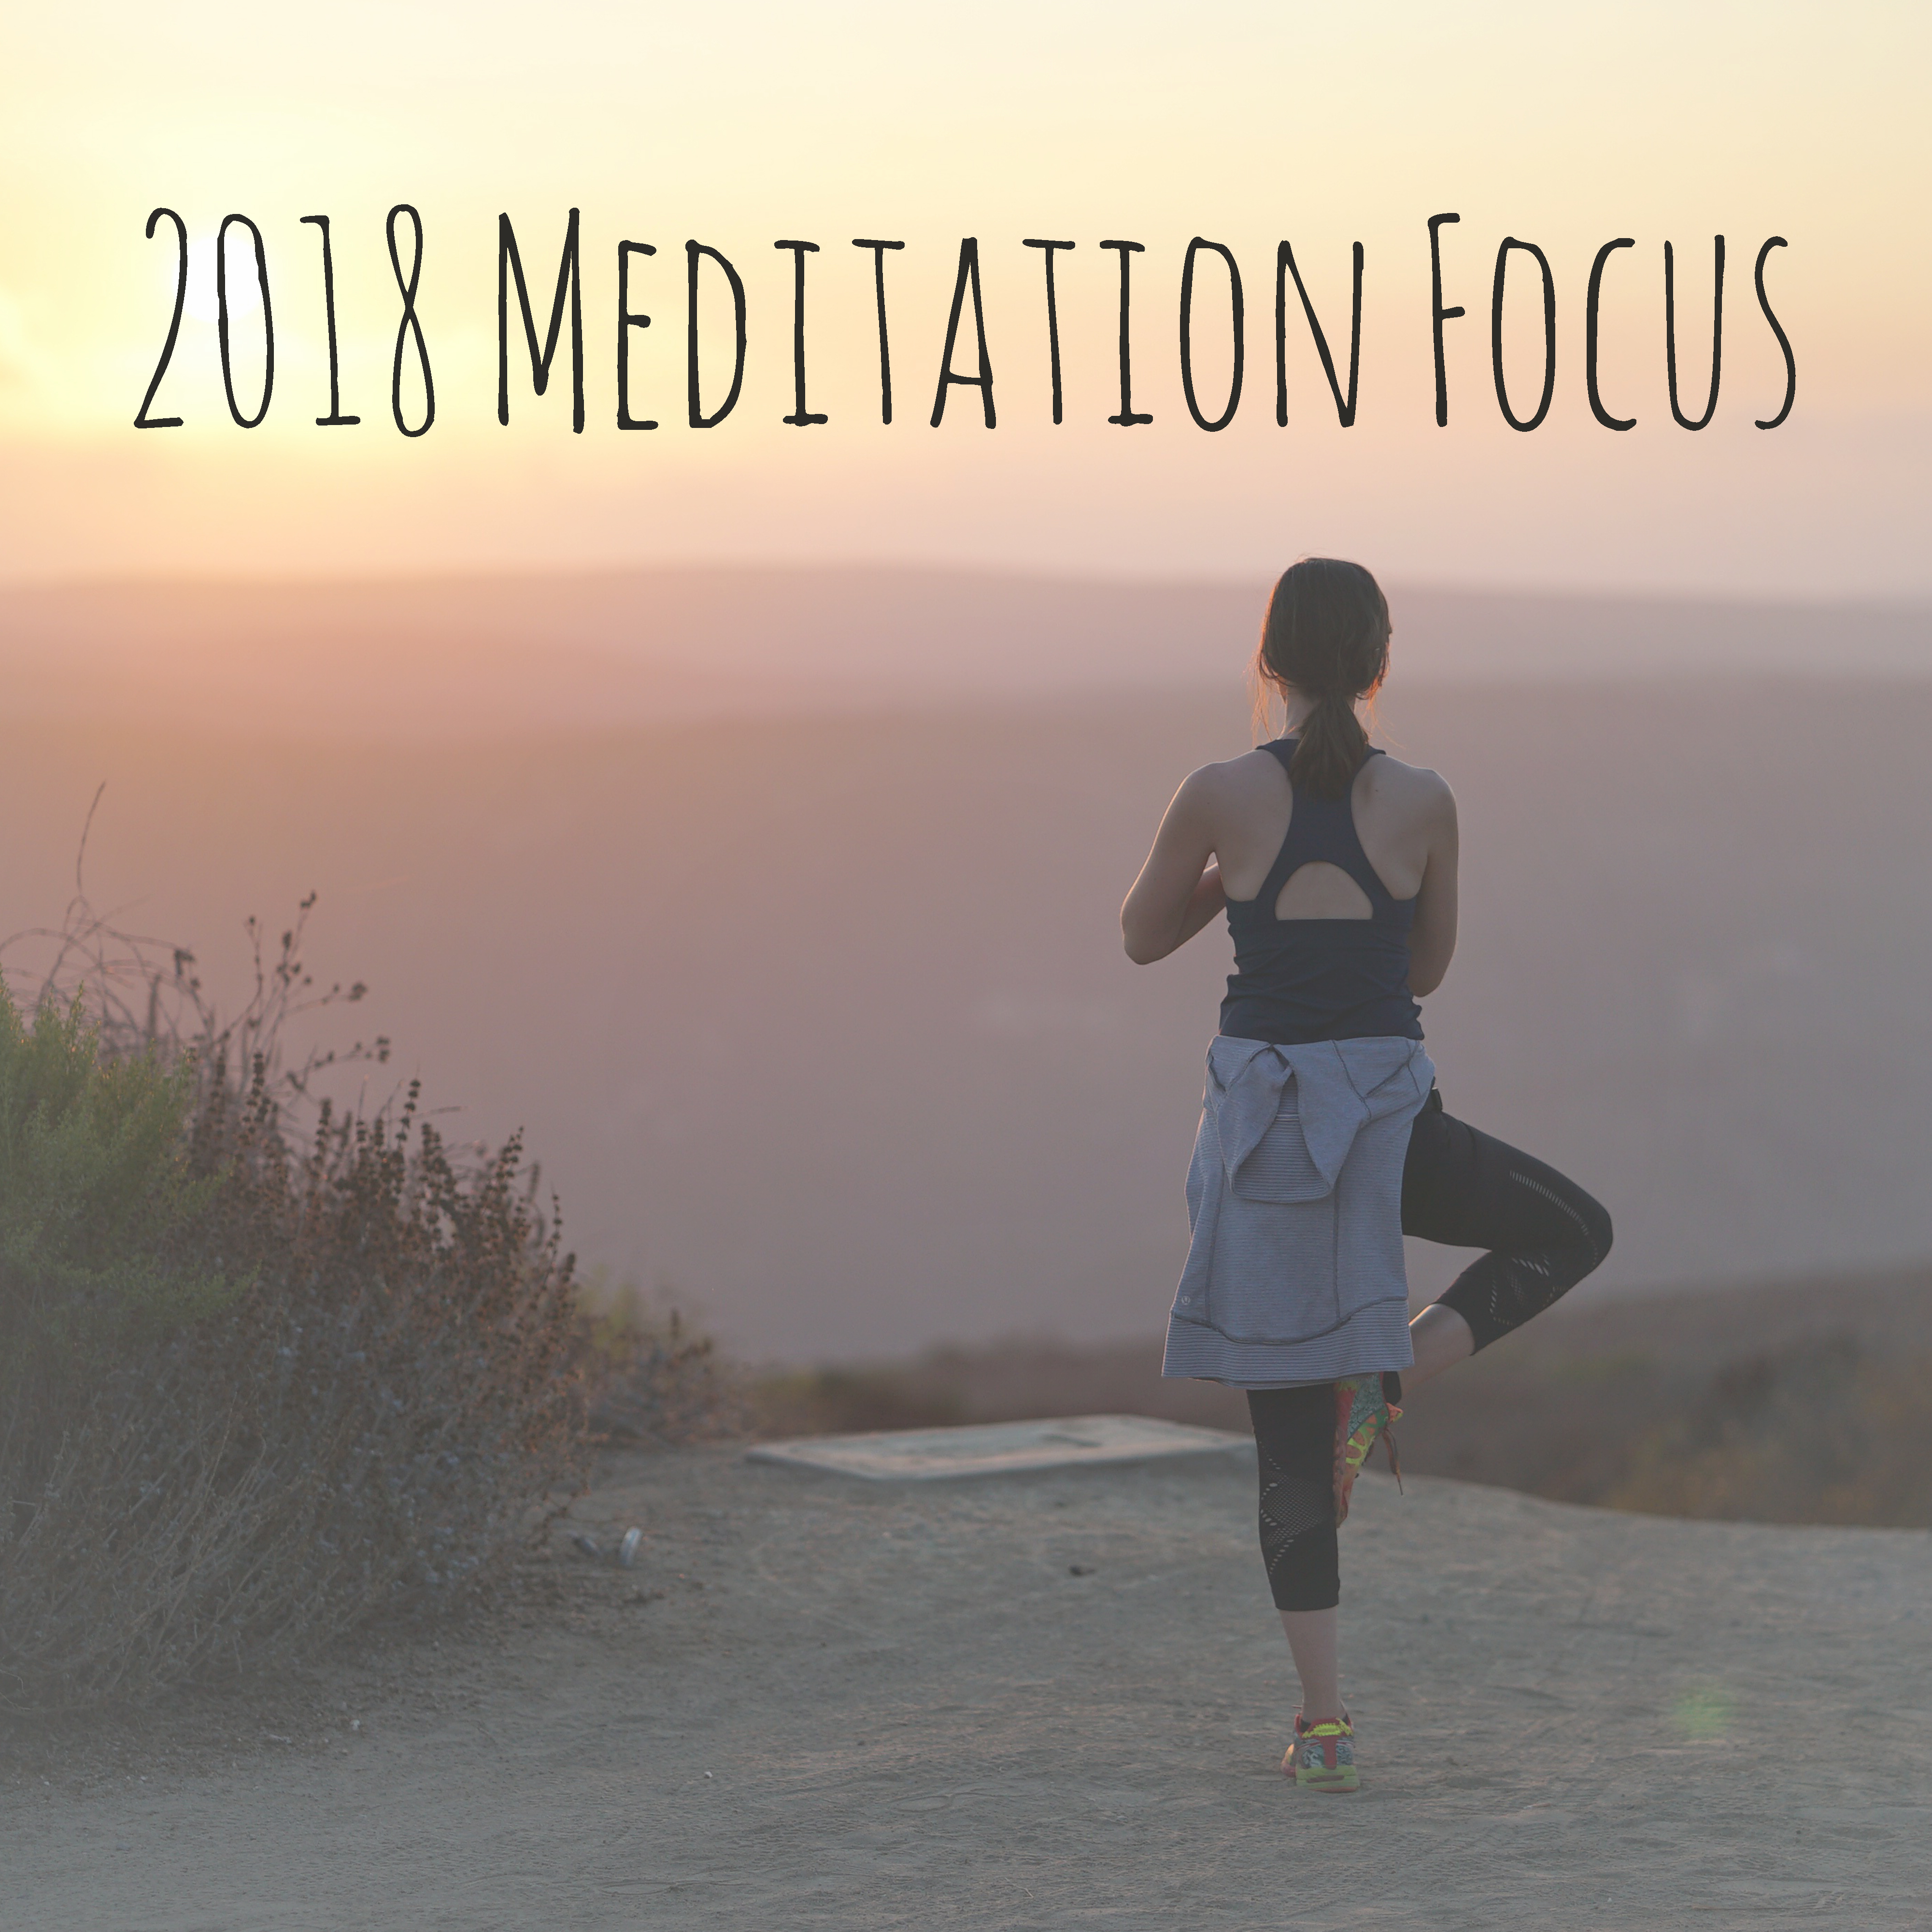 2018 Meditation Focus